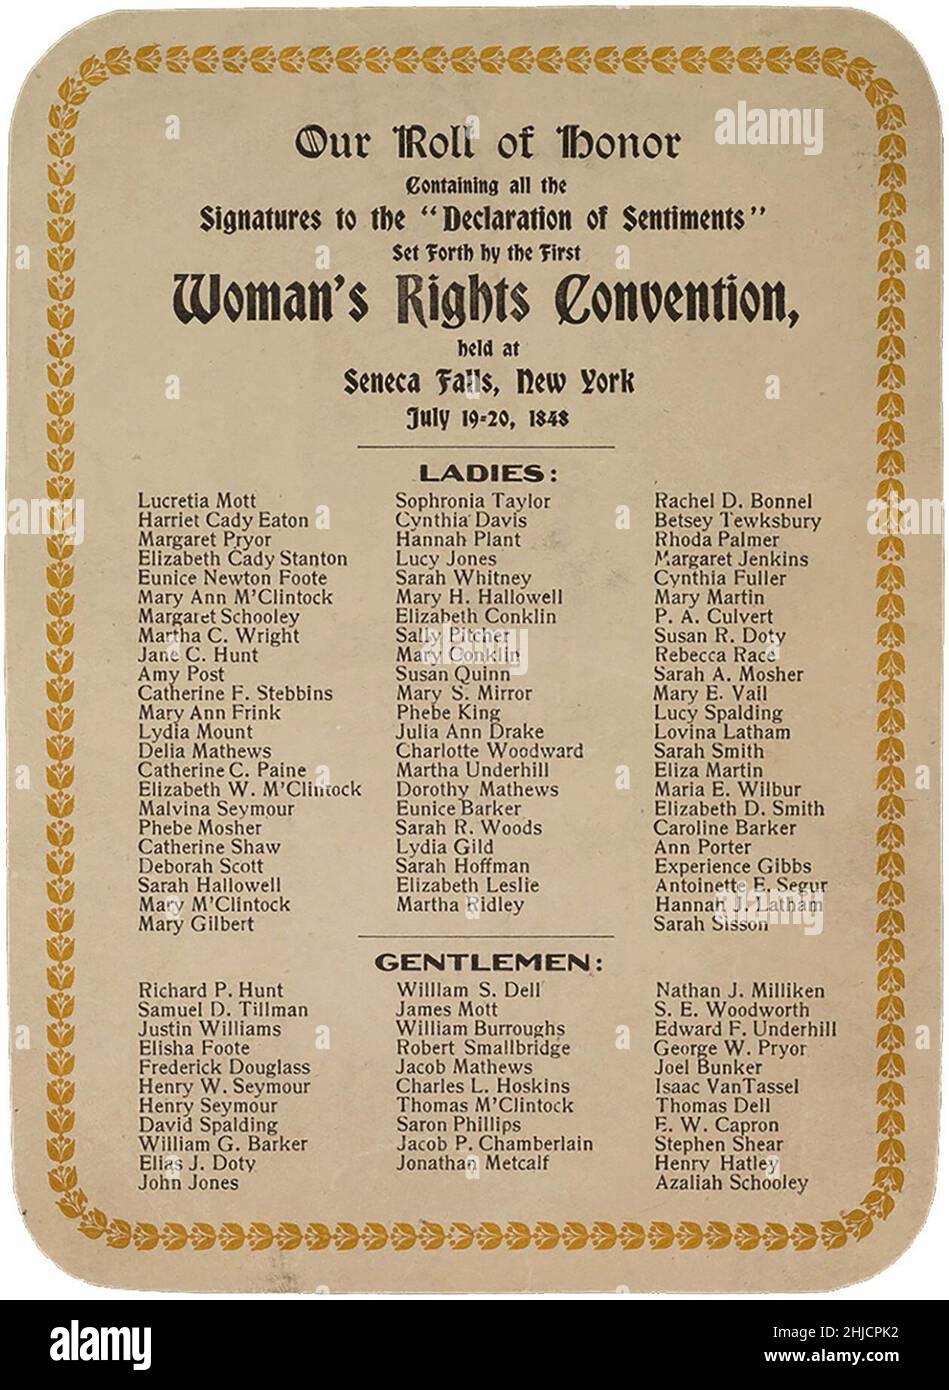 Unterschriftenliste der Stimmungserklärung, die von der ersten Frauenrechtskonvention in den Vereinigten Staaten vom 19. Bis 20. Juli 1848 in Seneca Falls, New York, abgehalten wurde. Karte, die 1908 für eine 50th-jährige Feier ausgestellt wurde. Stockfoto